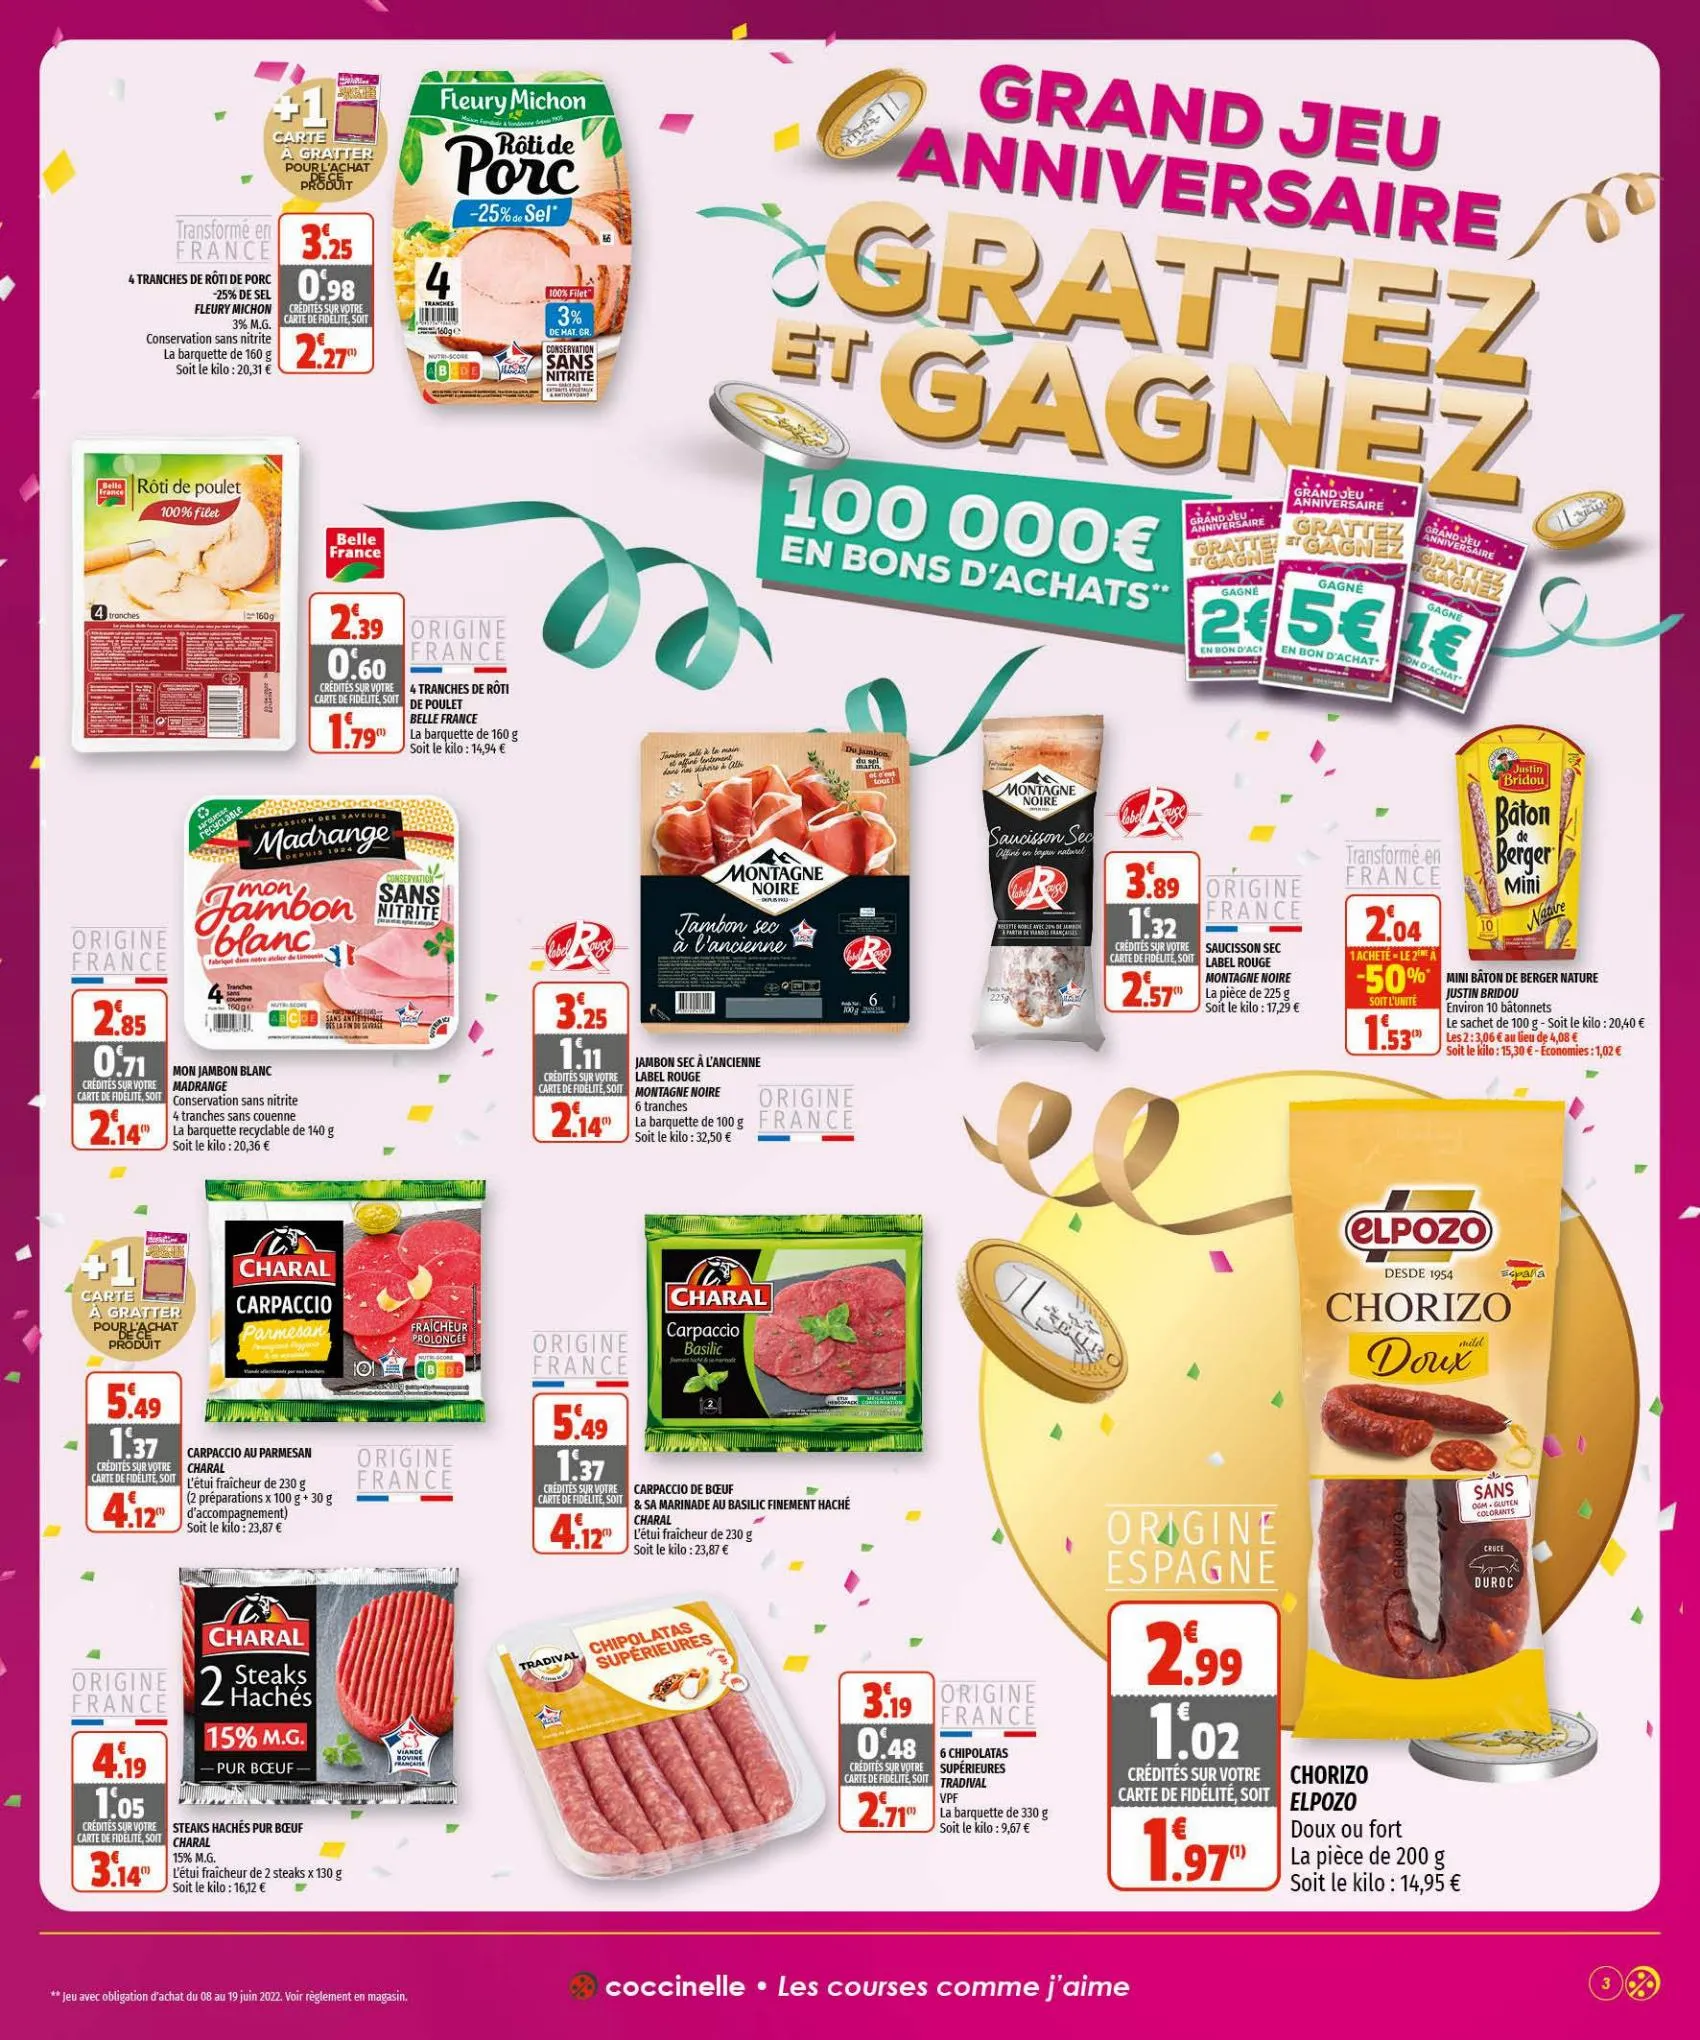 Catalogue Grand jeu anniversaire, page 00003